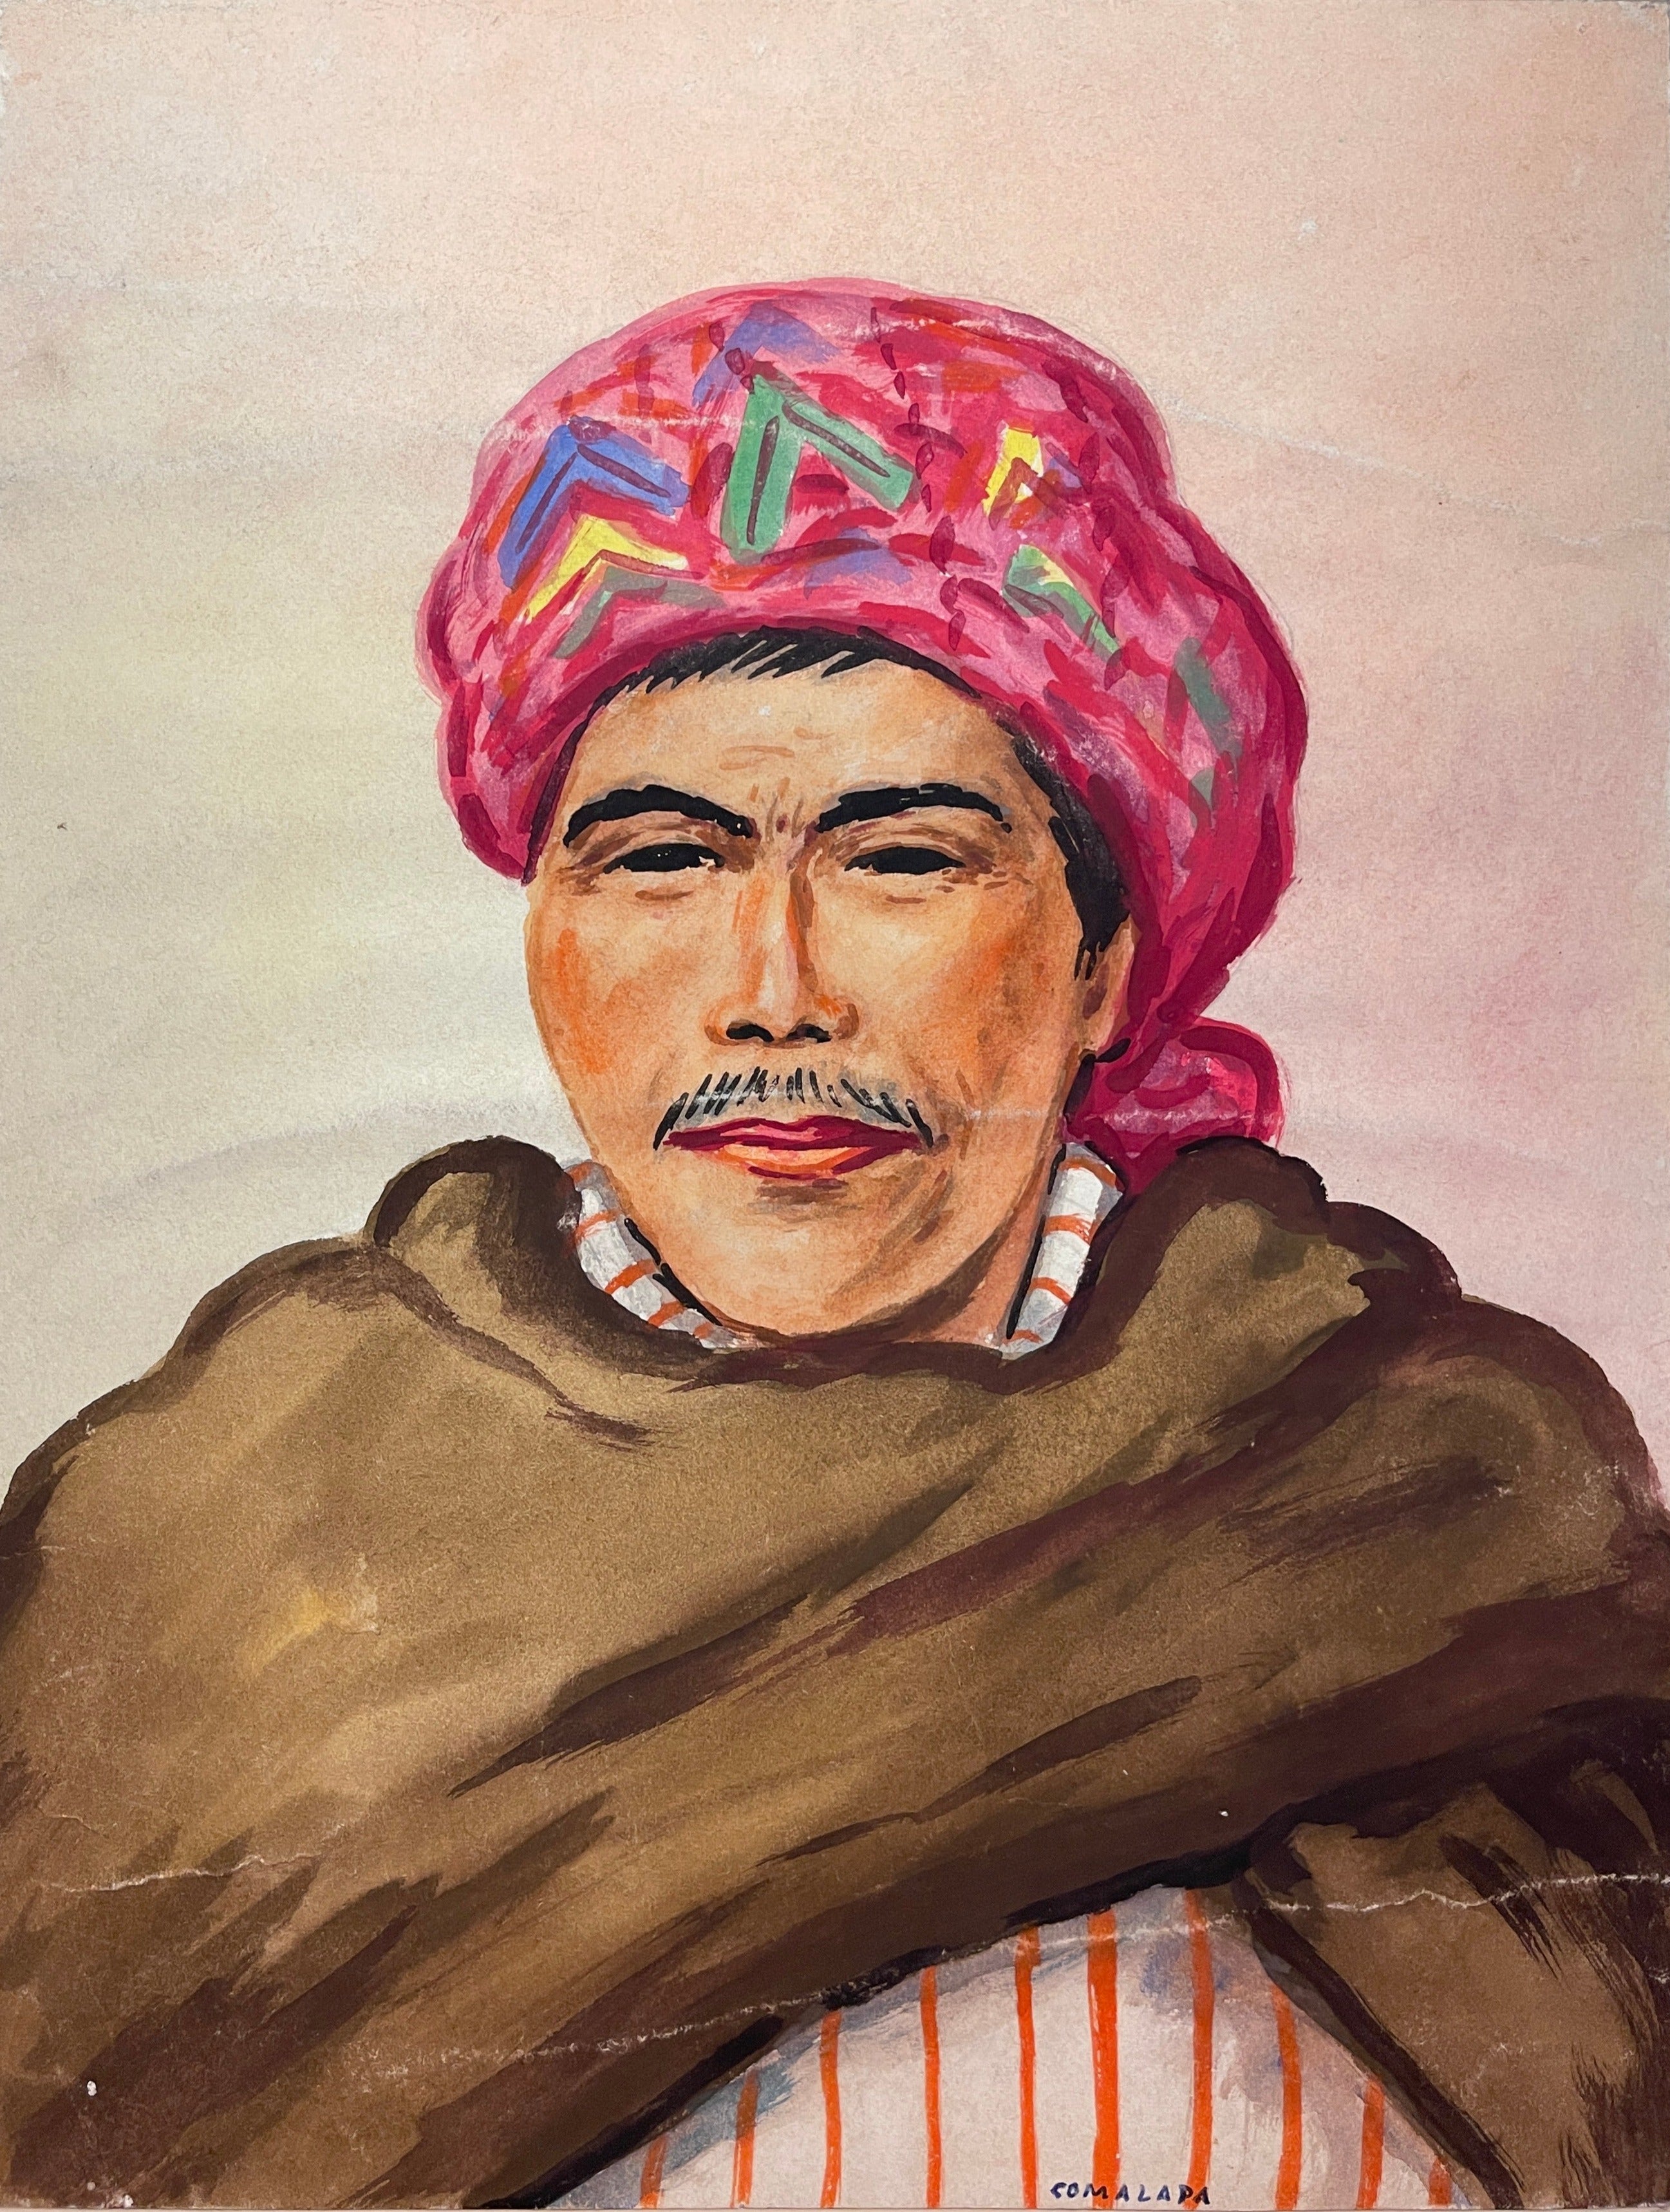 Maria Navas 1950 Signed Watercolor Painting - Mayan Man Portrait - Comalapa at Adirondack Retro